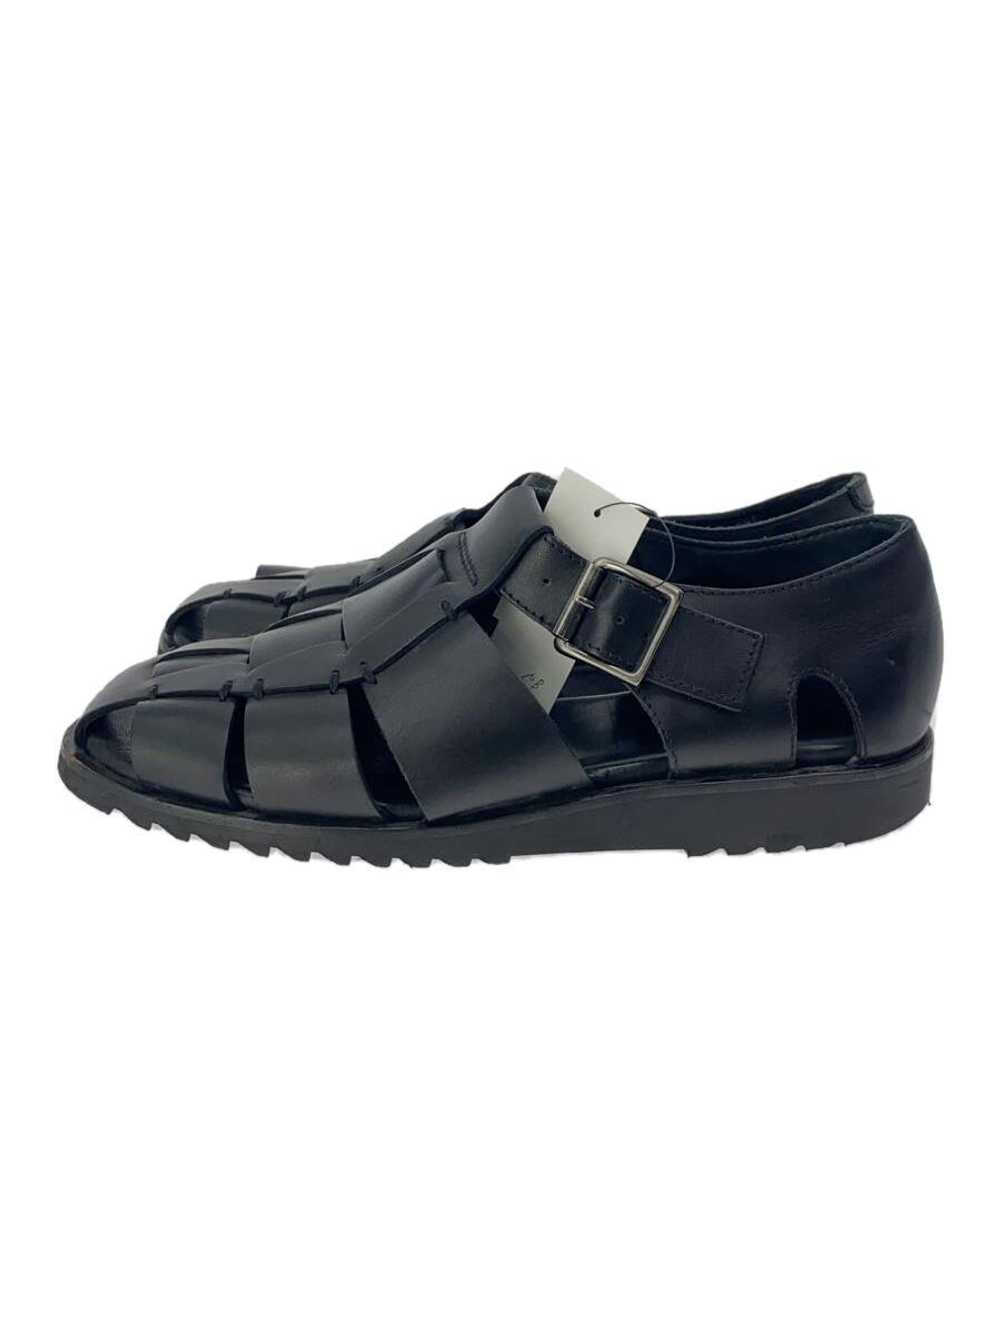 Paraboot Sandals/40/Blk/Pacific/Gurkha Shoes BUY47 - image 1